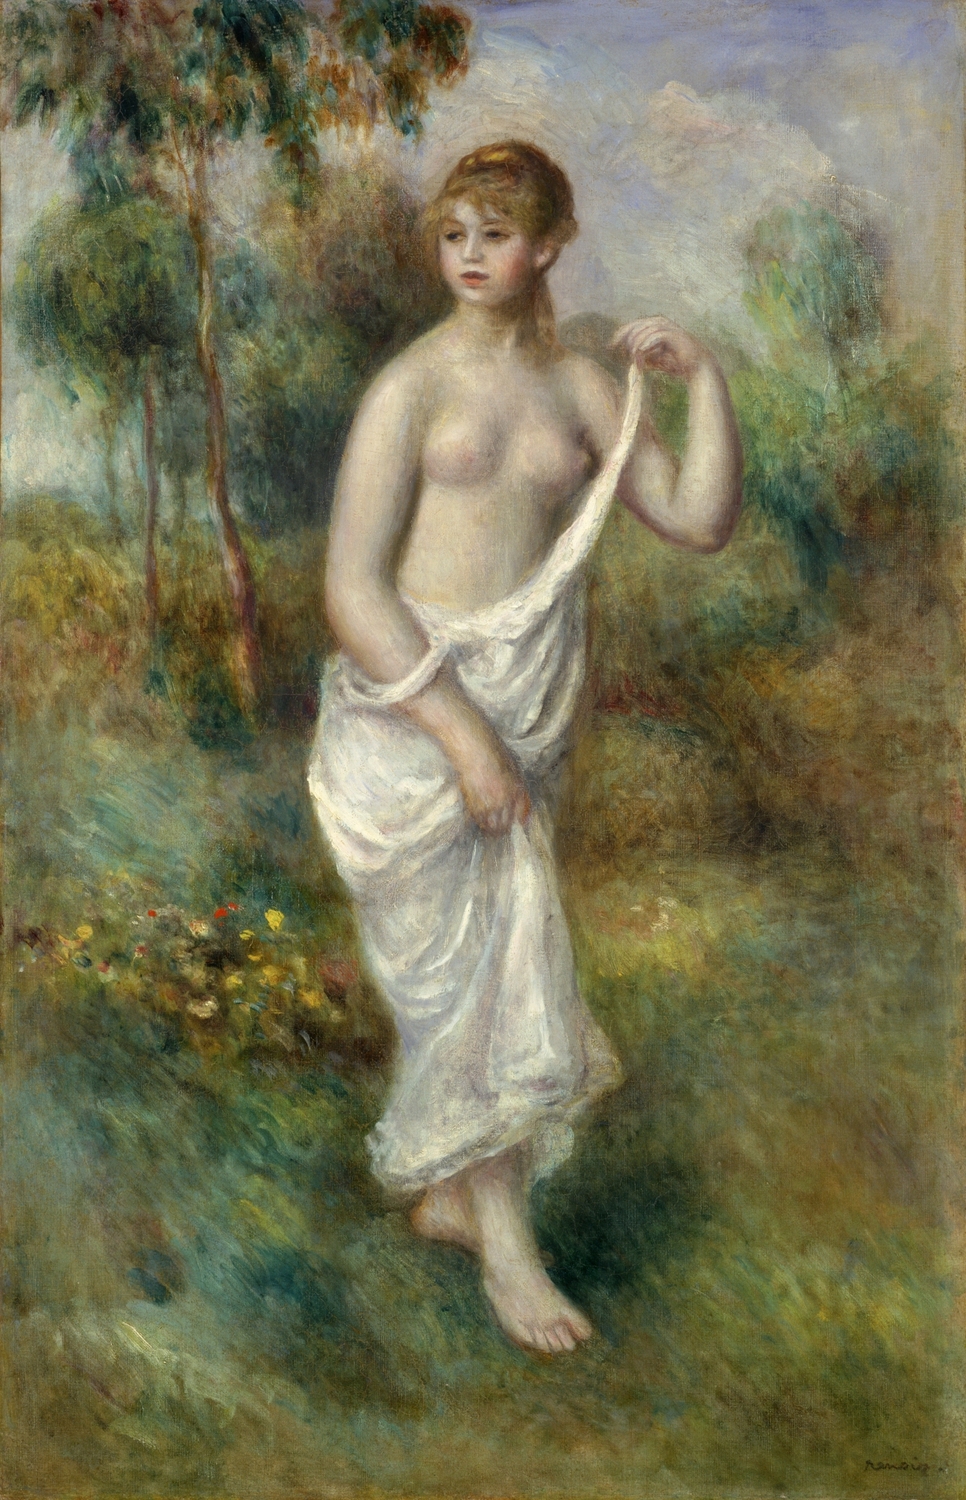 裸婦像ルノアール 「洗濯する女」裸婦像のレプリカ - 彫刻・オブジェ